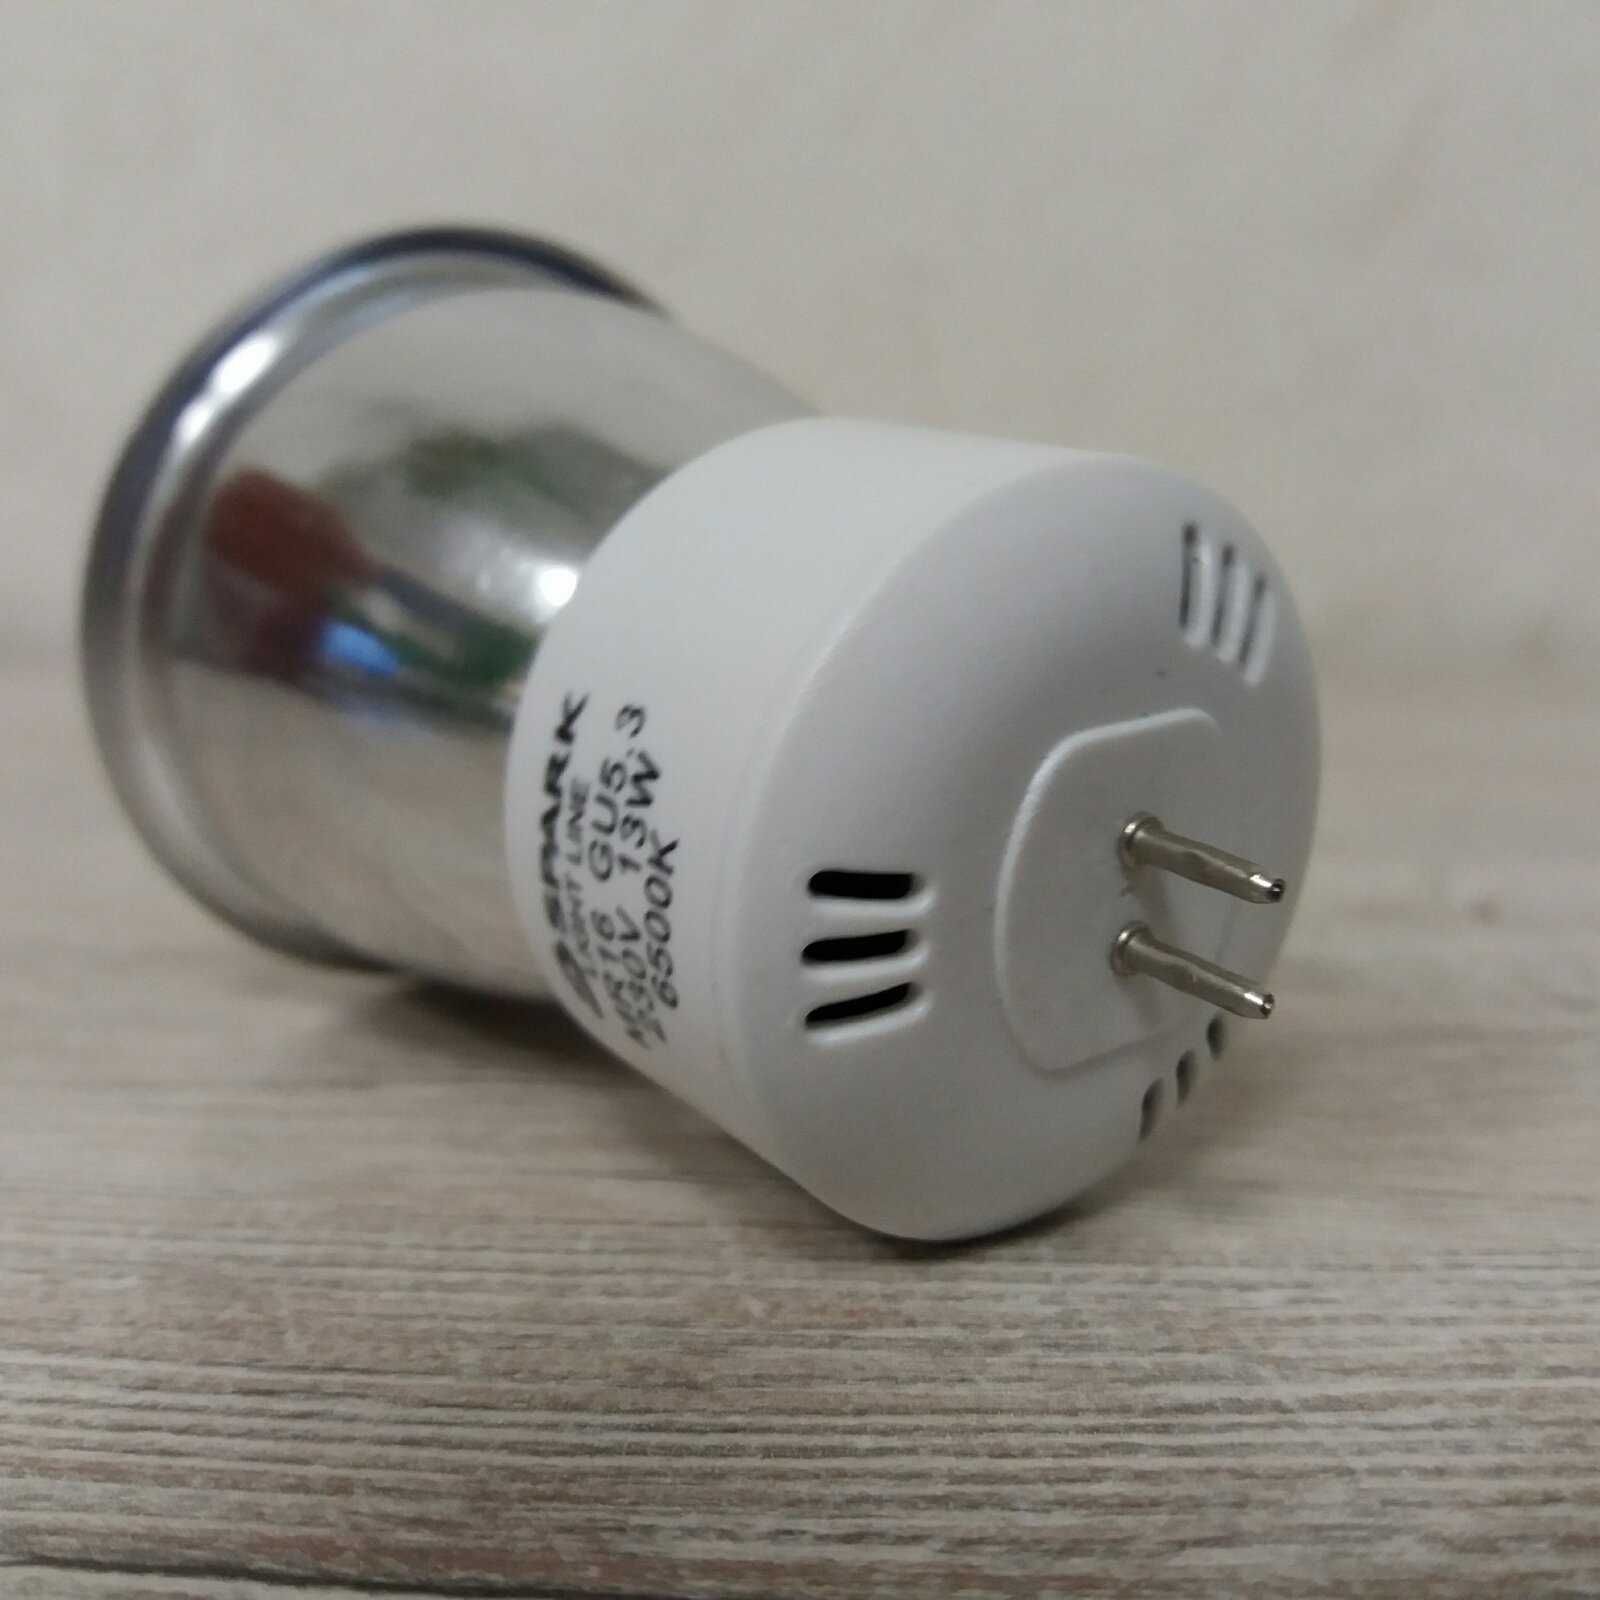 Лампа  Енергозберігаюча  Spark GU5.3